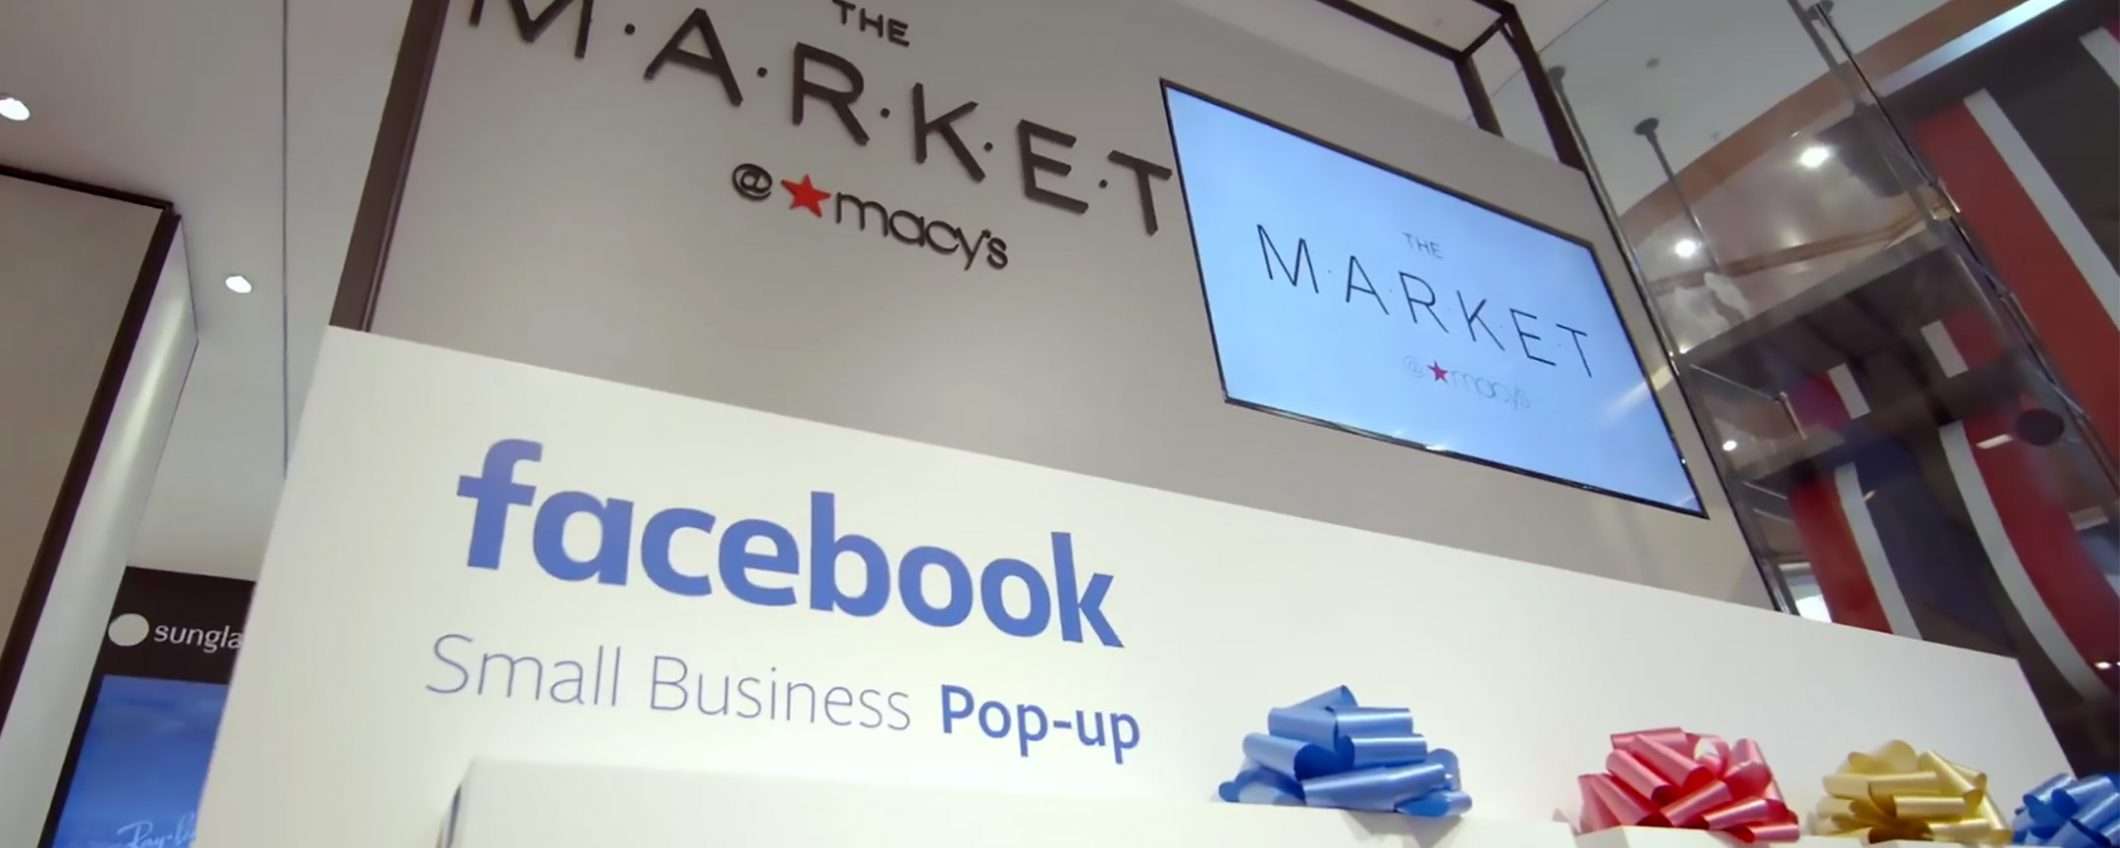 Facebook: un pop-up store oggi, un negozio domani